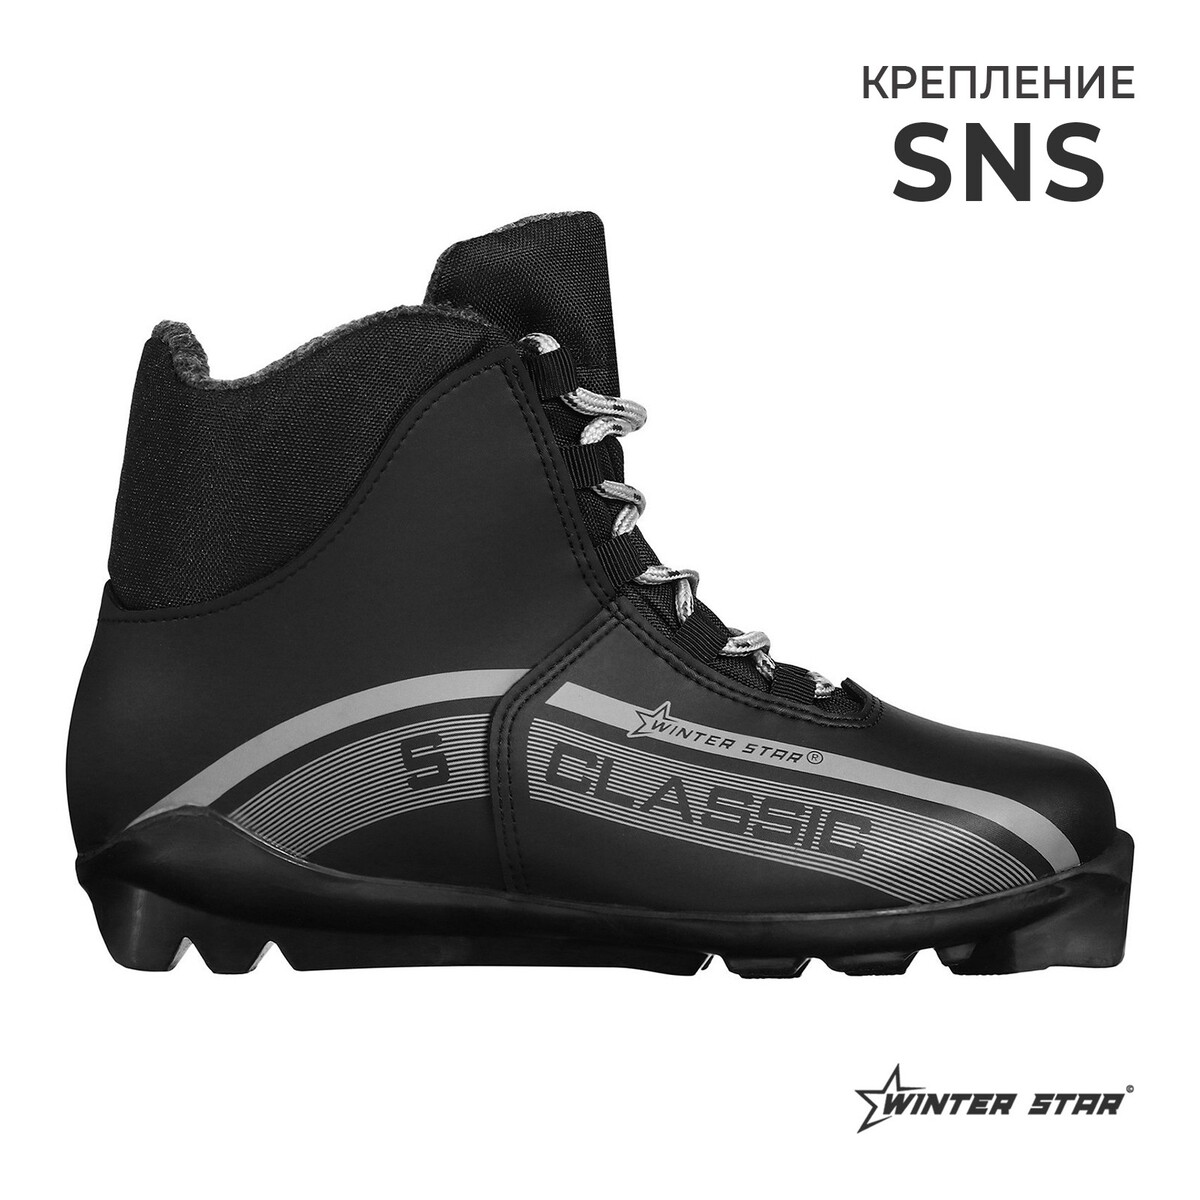 Ботинки лыжные winter star classic, sns, р. 46, цвет черный, лого серый ботинки лыжные winter star classic nn75 р 44 чёрный лого белый